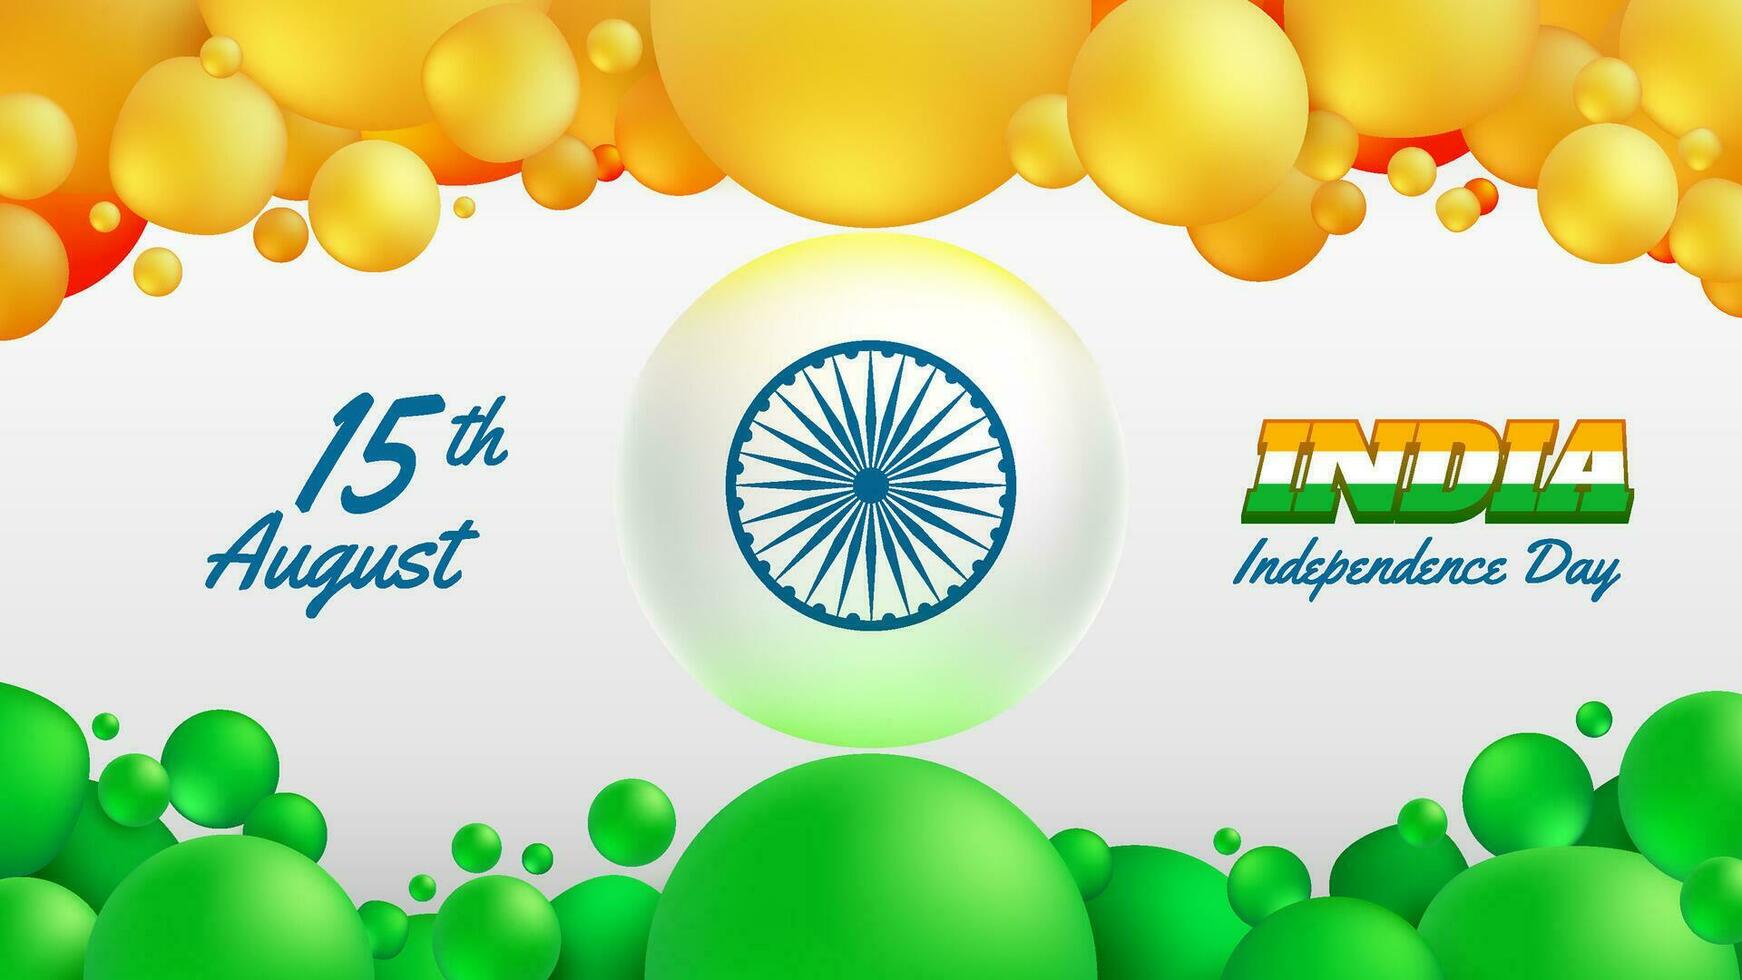 realistico astratto arancia e verde palle come India indipendenza giorno sfondo vettore